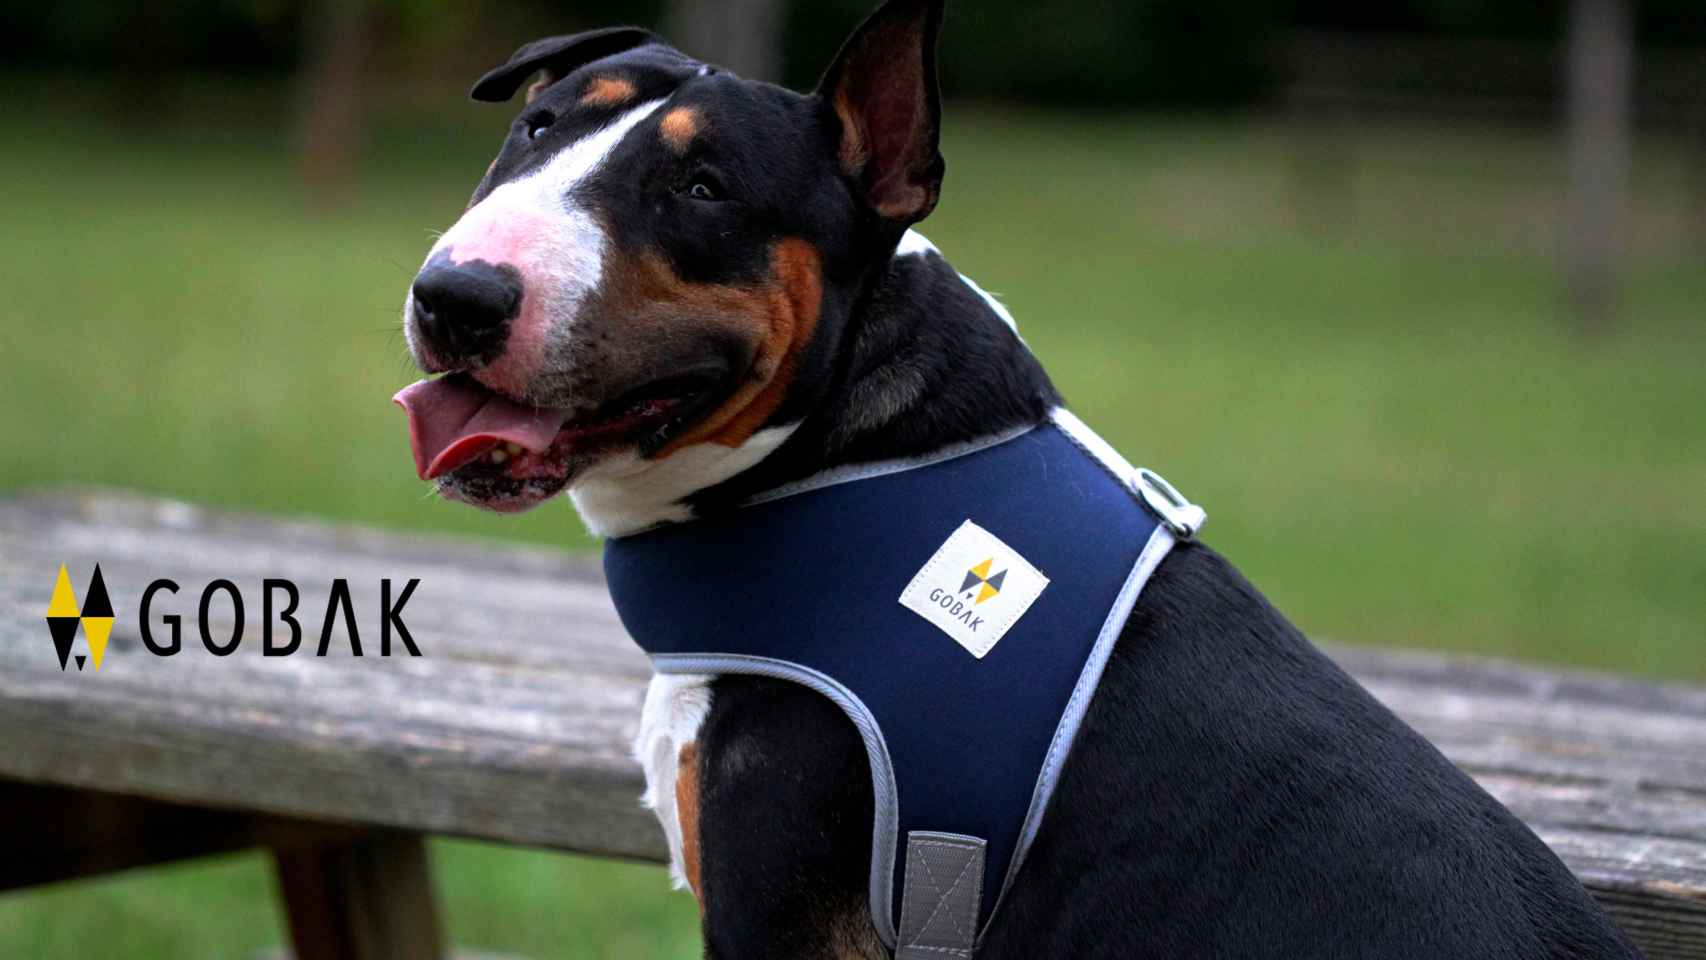 Gobak, la primera marca vasca de productos especializados para perros/Gobak